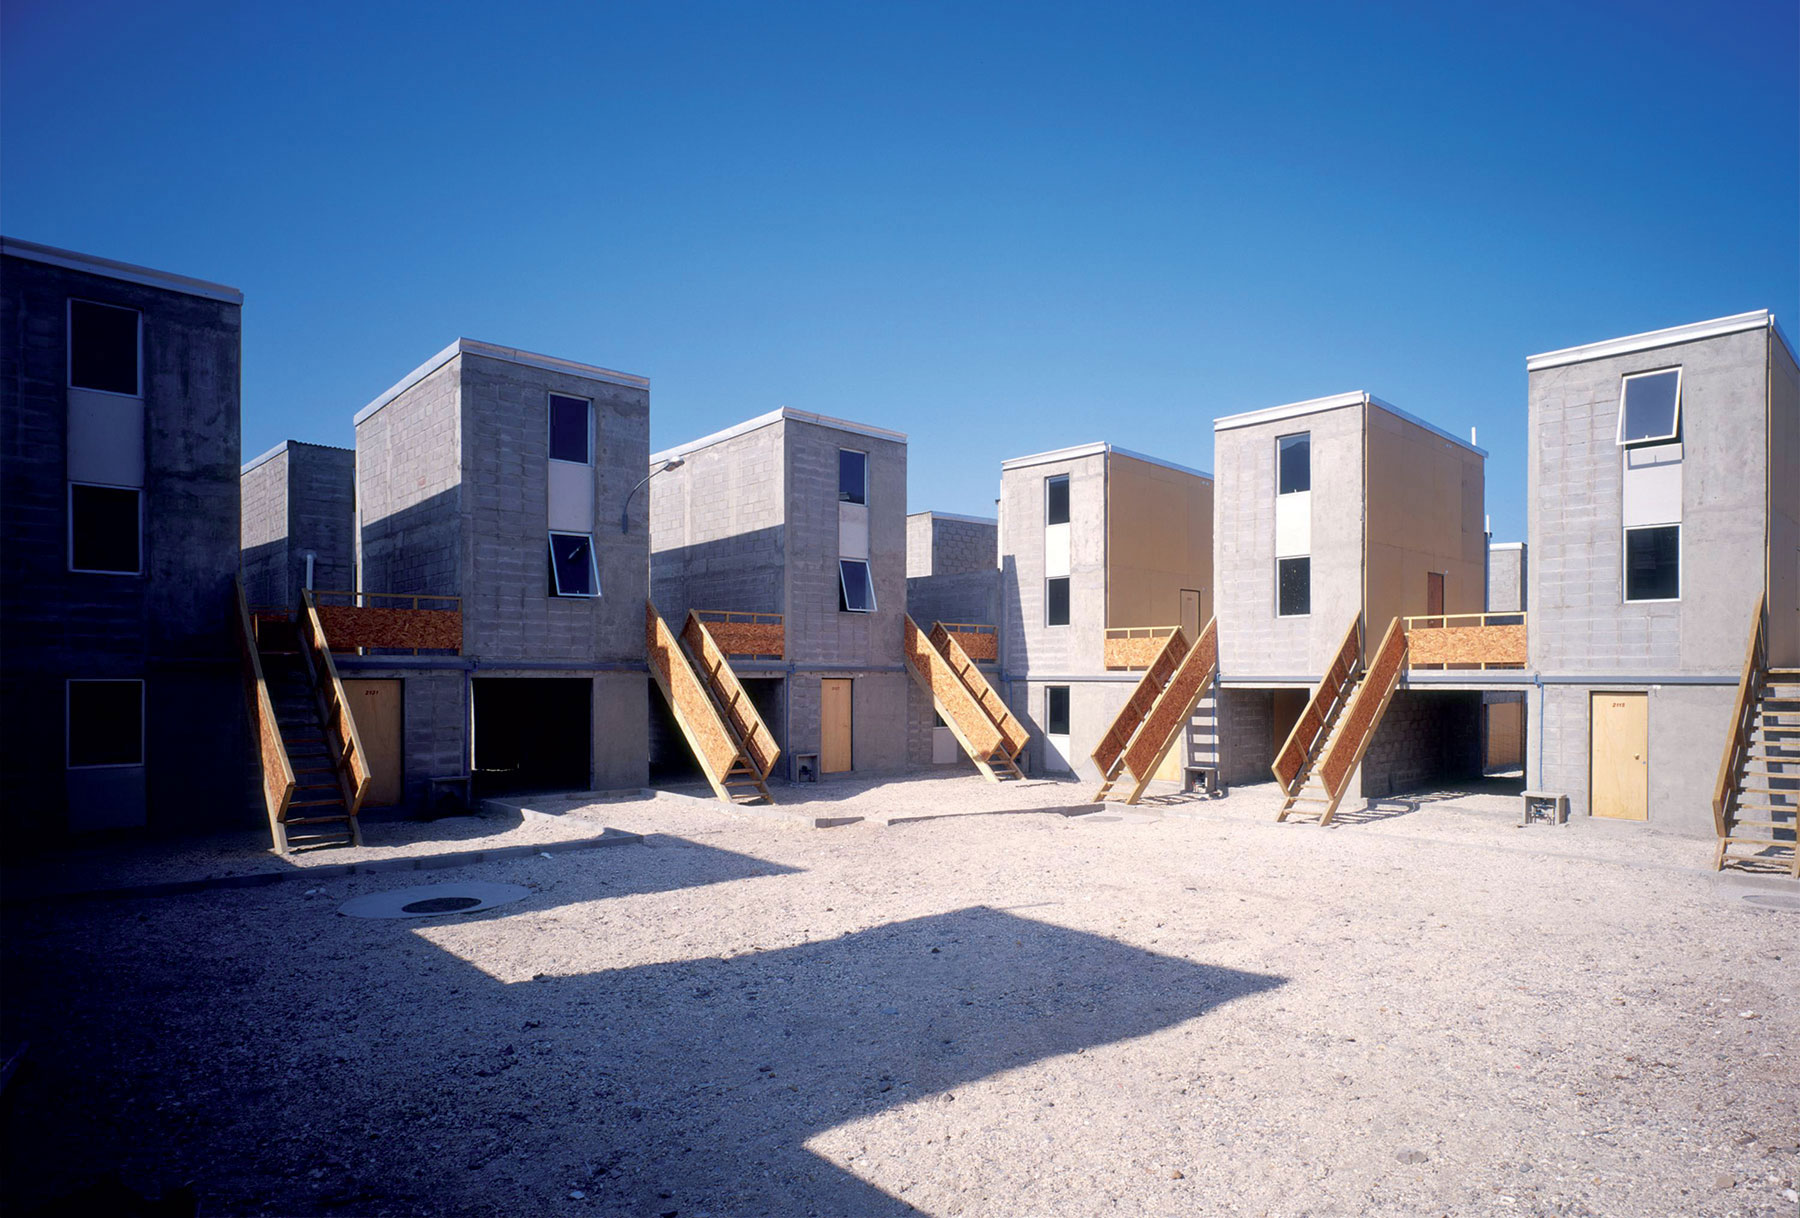 Obytný soubor Quinta Monroy pro sto rodin v Iquique (2004) – přestavba domů, které jsou financovány z veřejných prostředků. Foto: Cristobal Palma